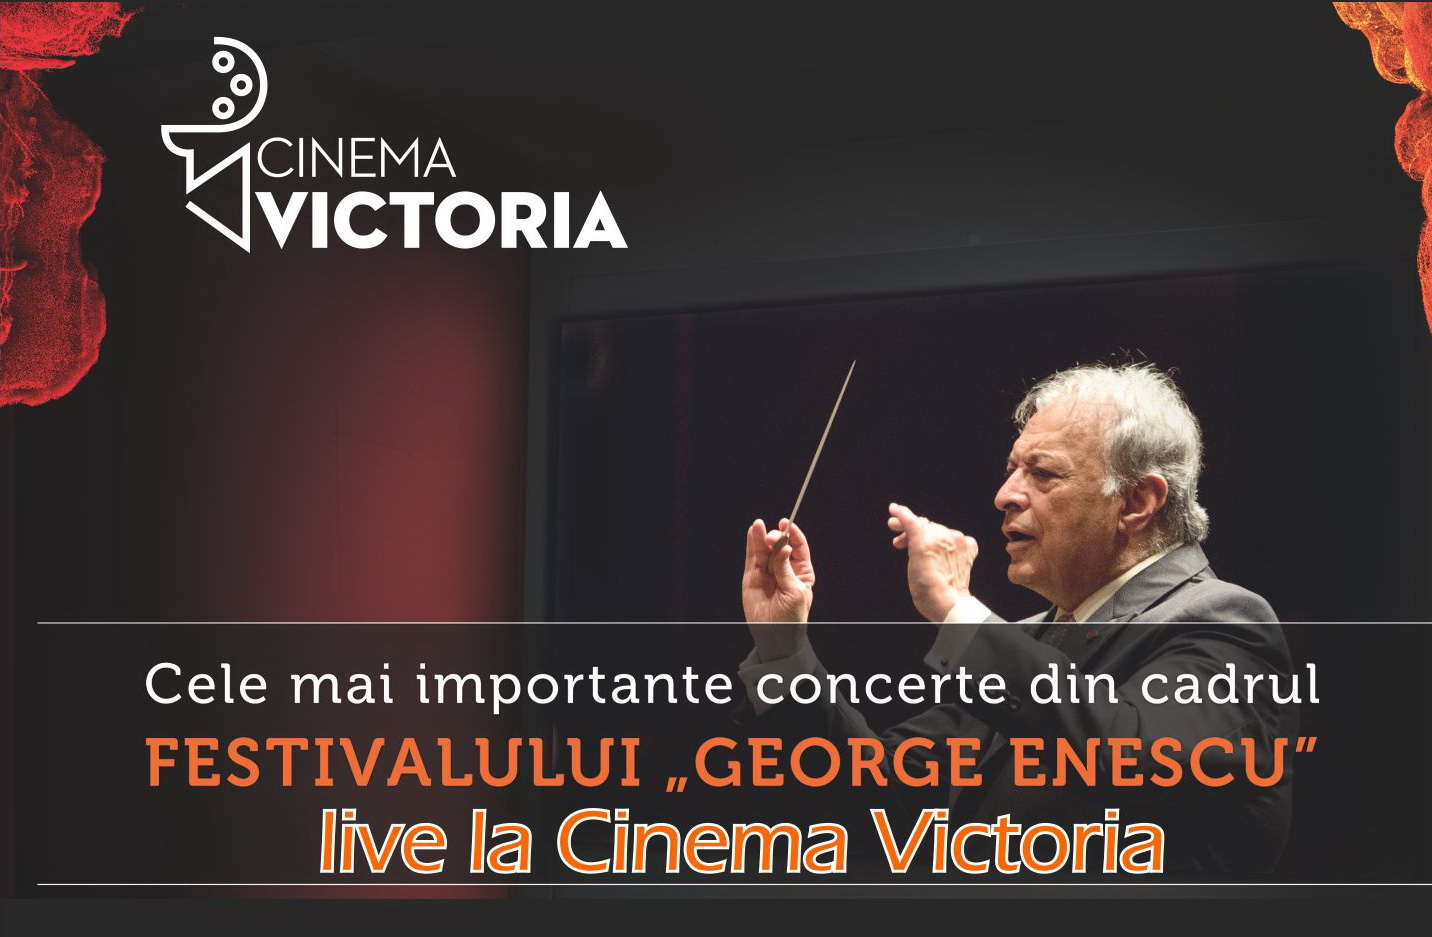 Festivalul Internațional George Enescu, transmis live la Cinema Victoria